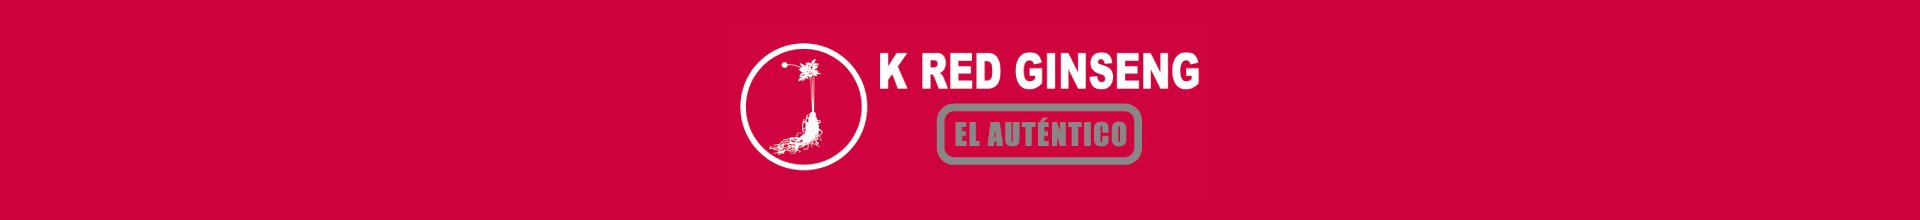 K RED GINSENG